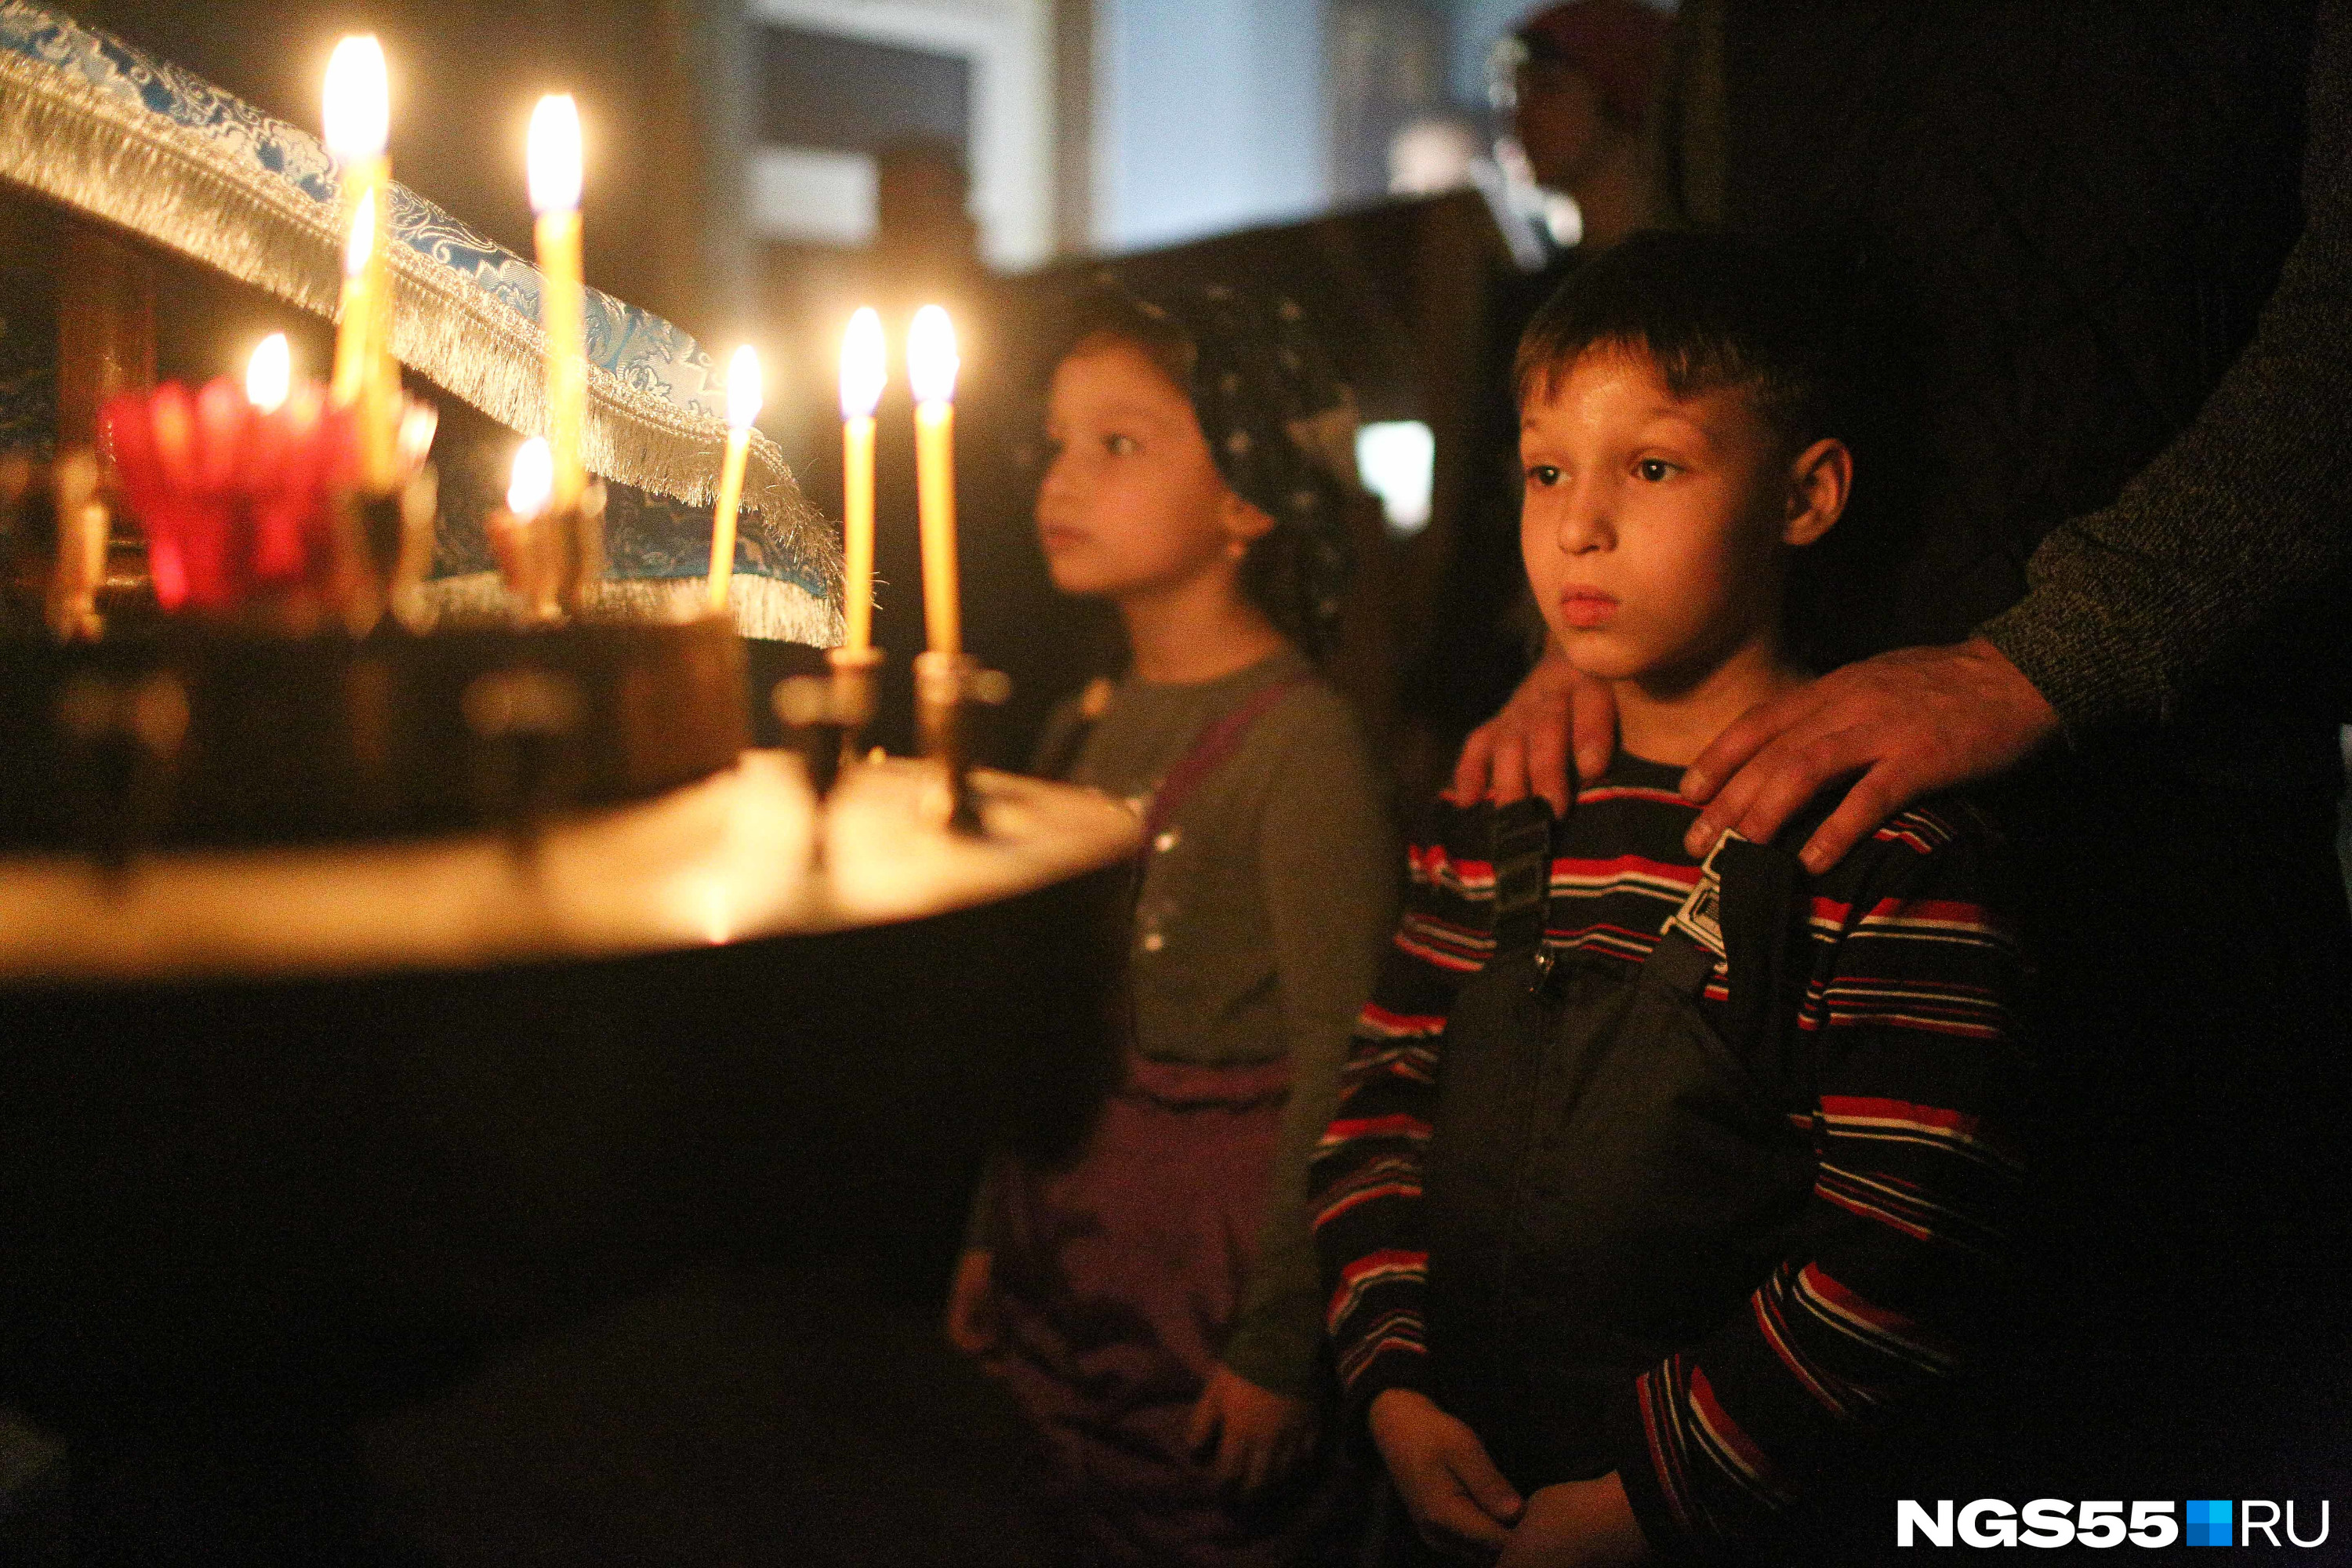 Дети завороженно смотрели на пламя свечей